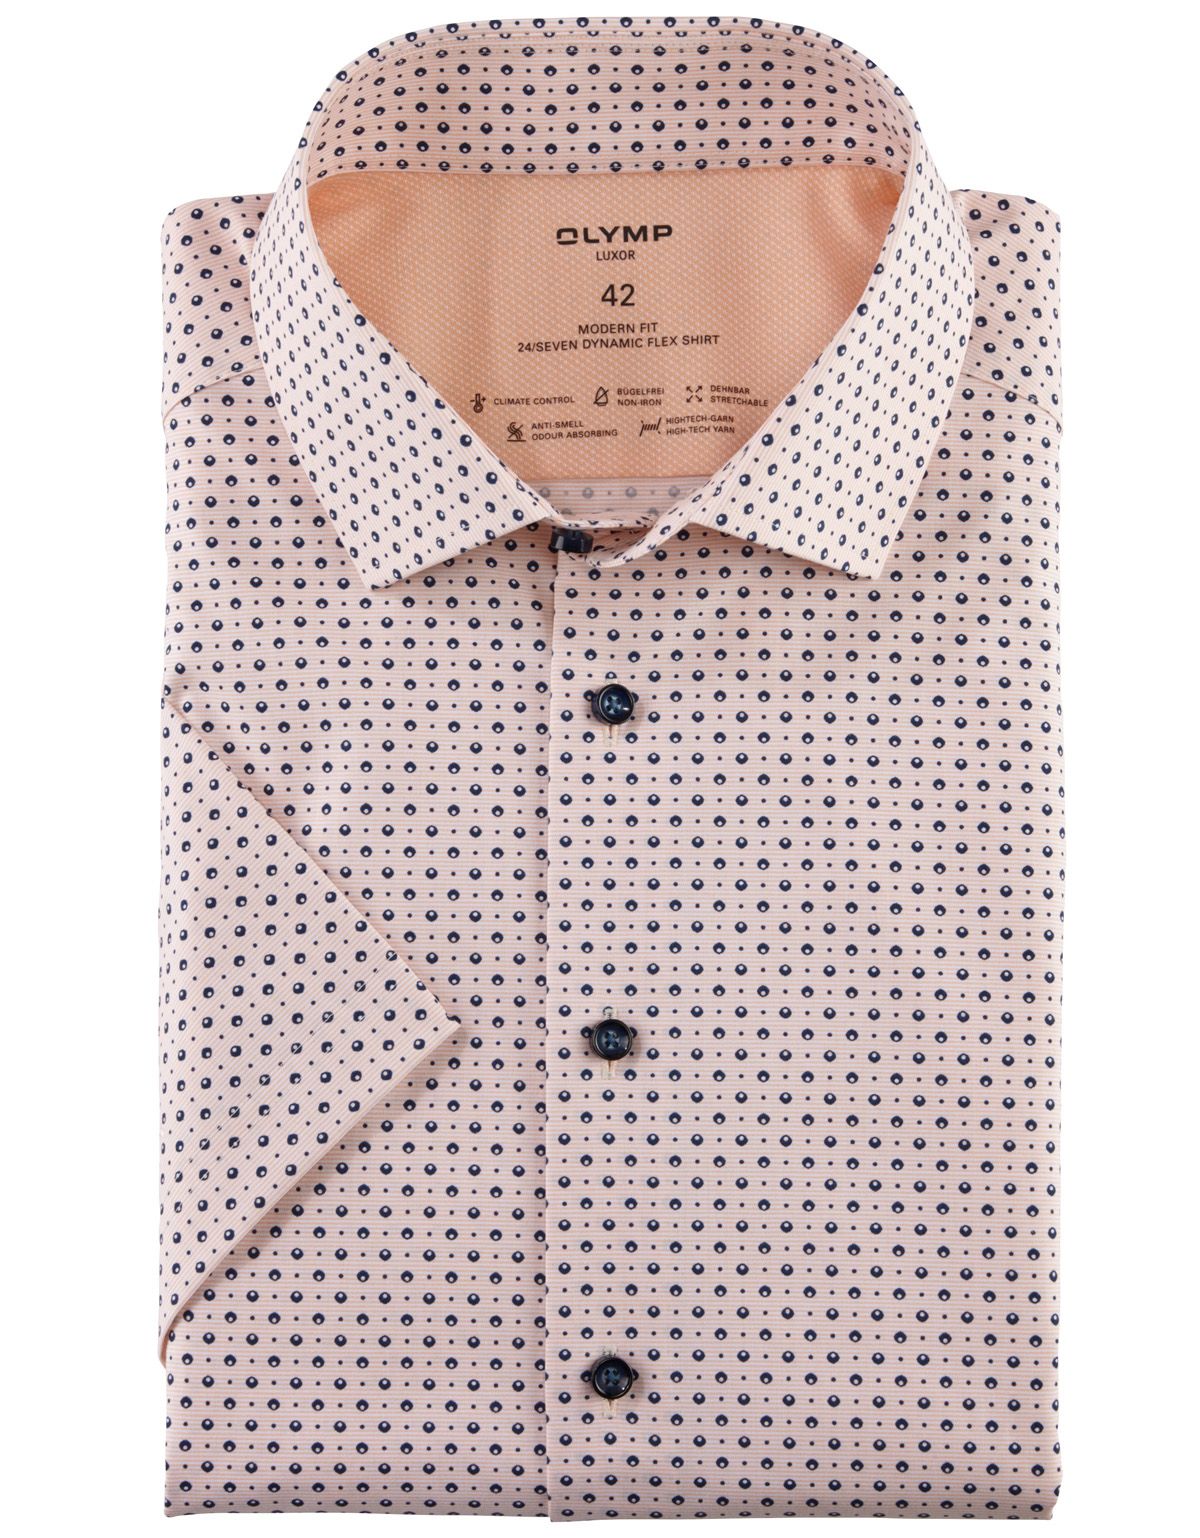 Рубашка с рисунком OLYMP Luxor 24/7 климат-контроль, modern fit[Оранжевый]